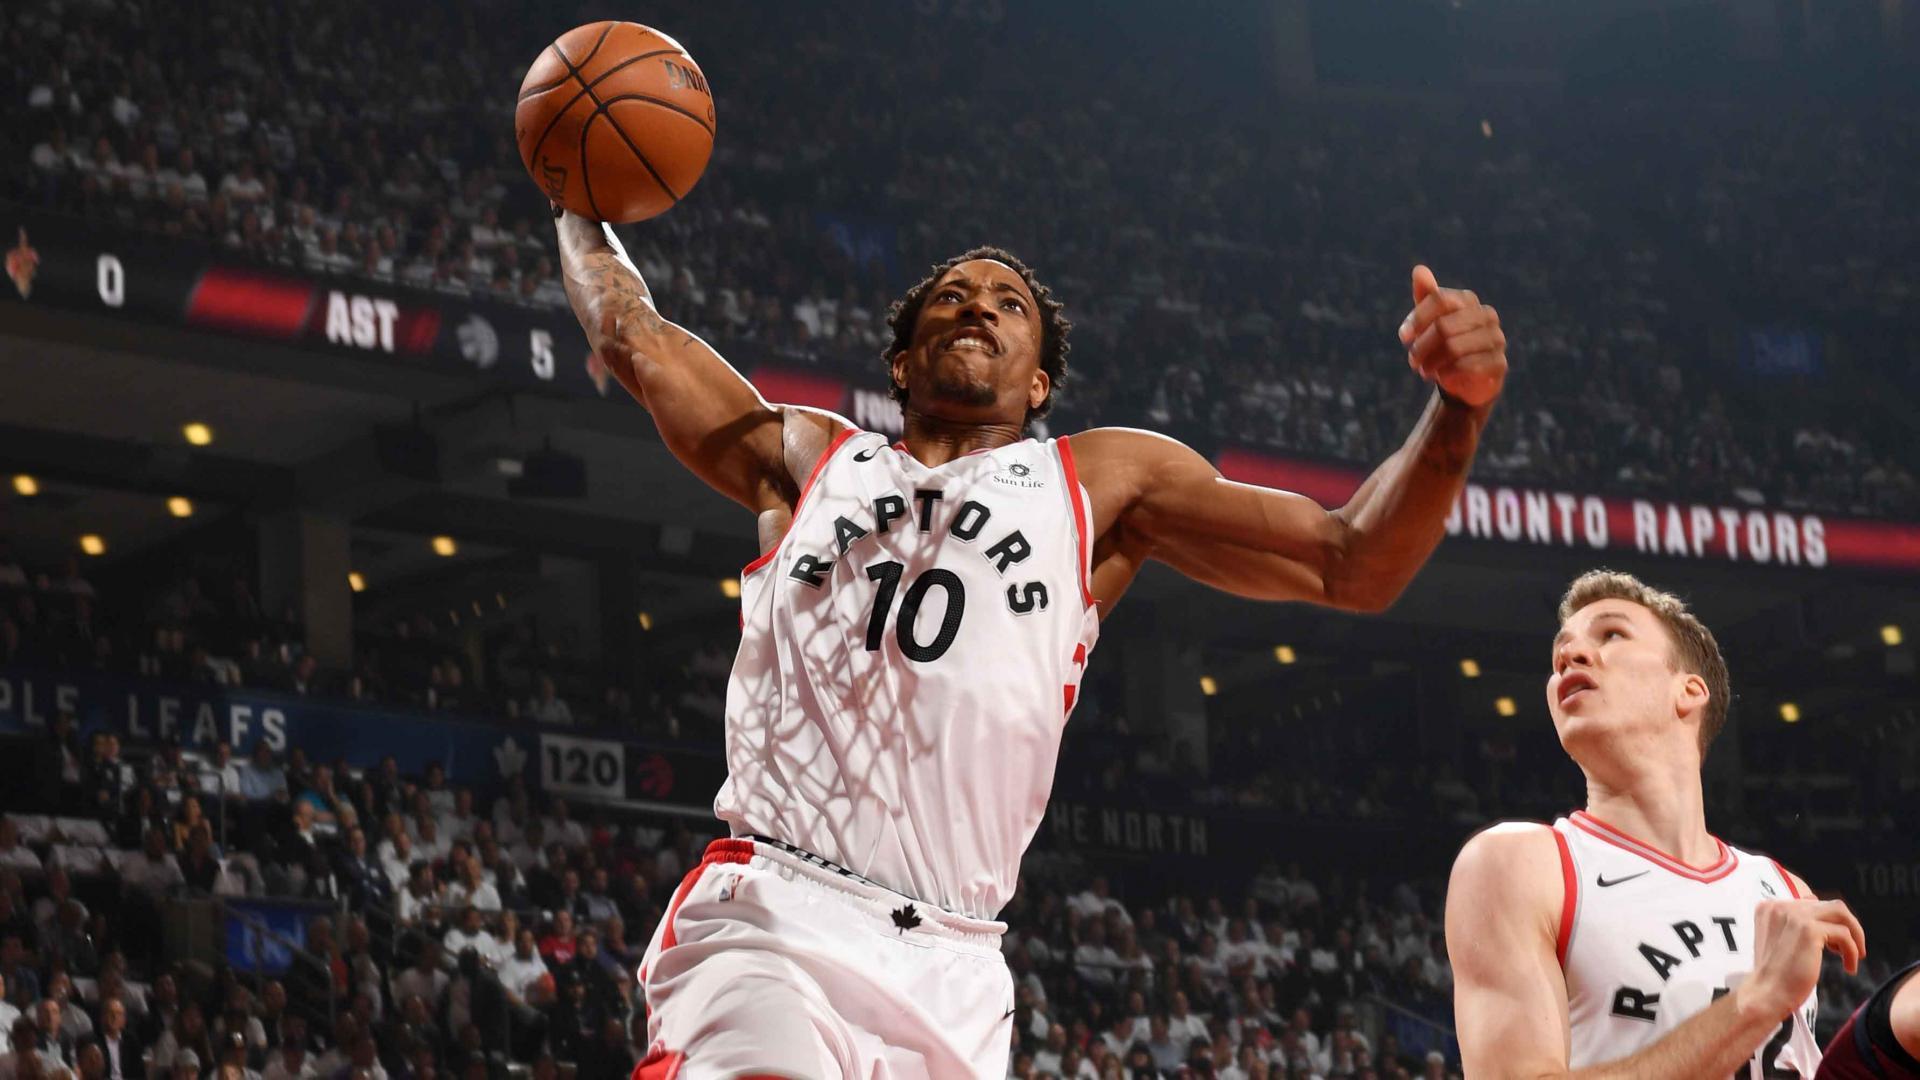 San Antonio Spurs trade Kawhi Leonard to Toronto Raptors for DeMar